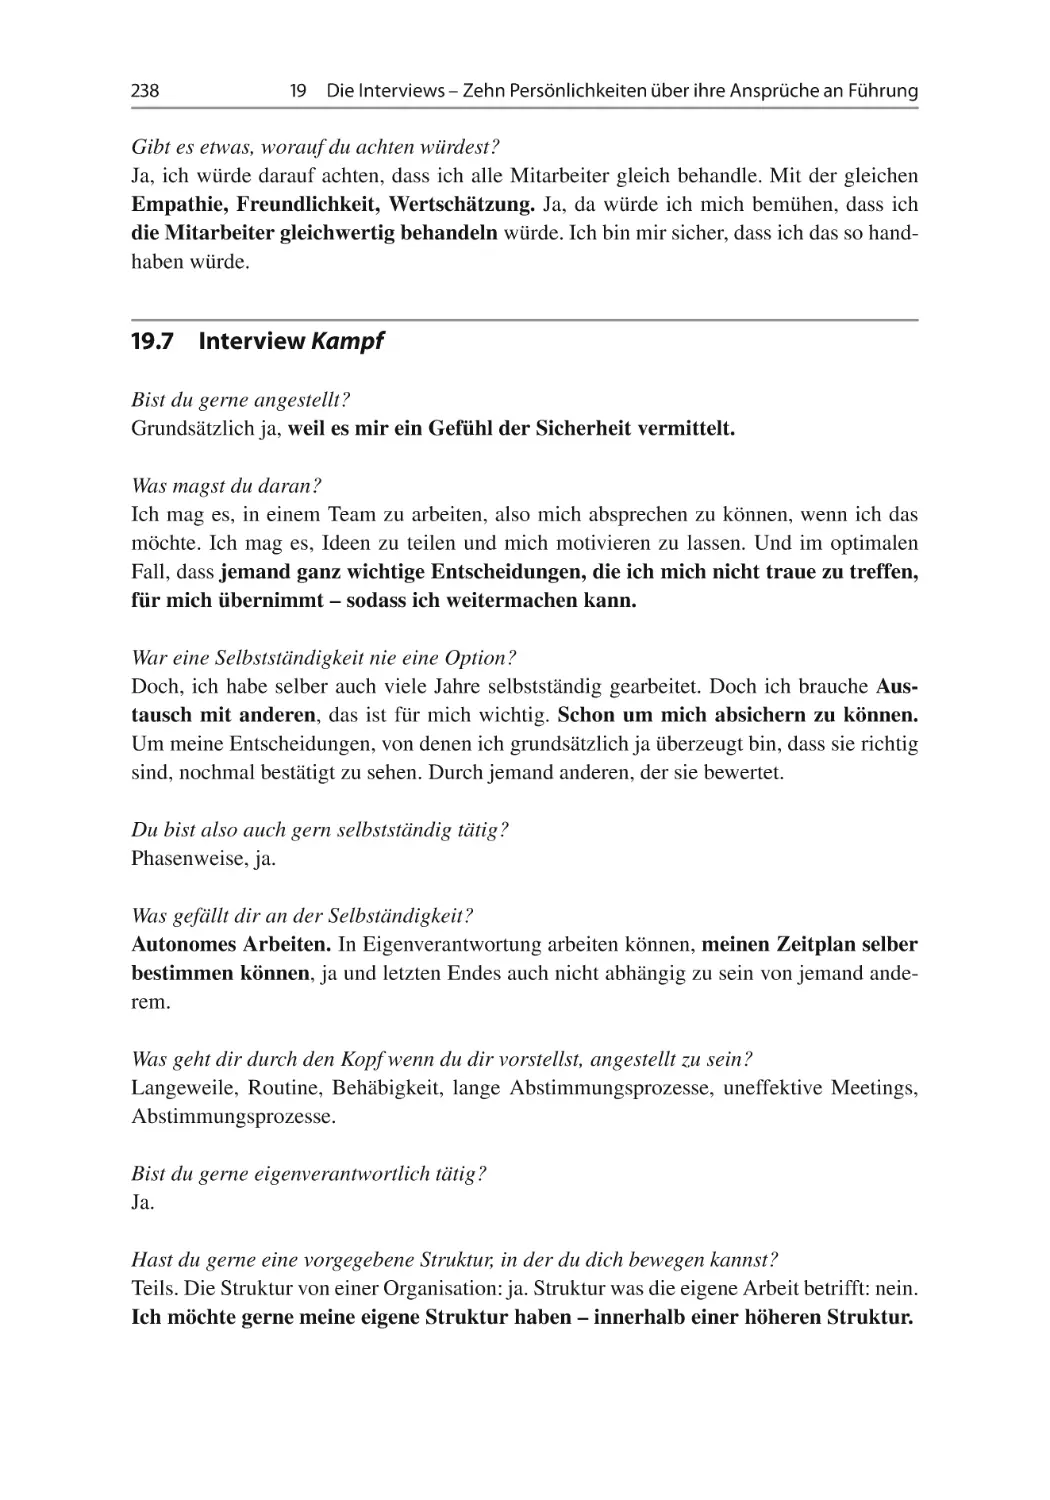 19.7 Interview Kampf